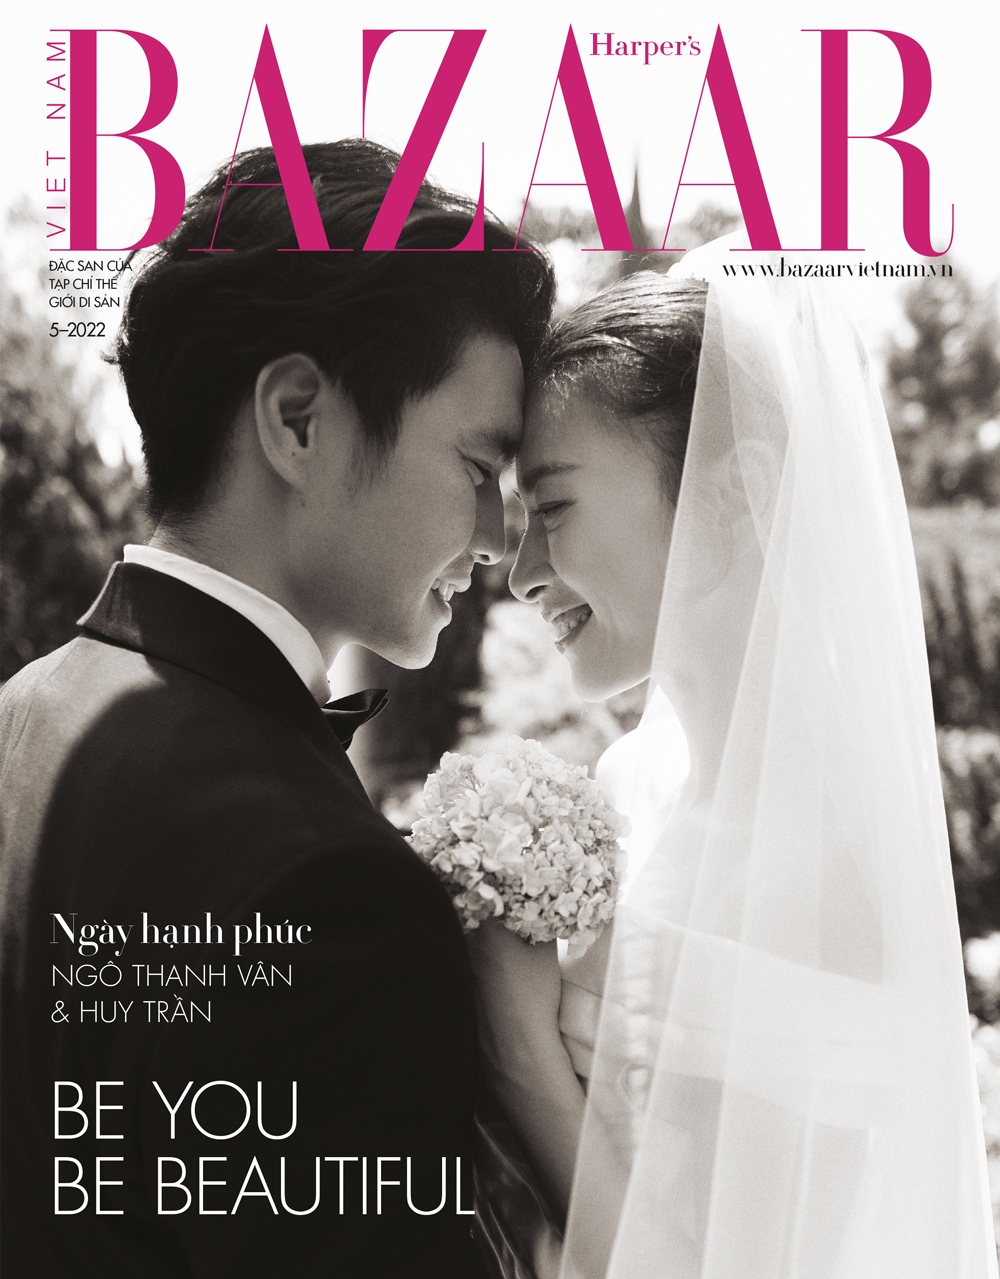 Hé lộ loạt ảnh cưới đẹp như mơ của Ngô Thanh Vân và Huy Trần